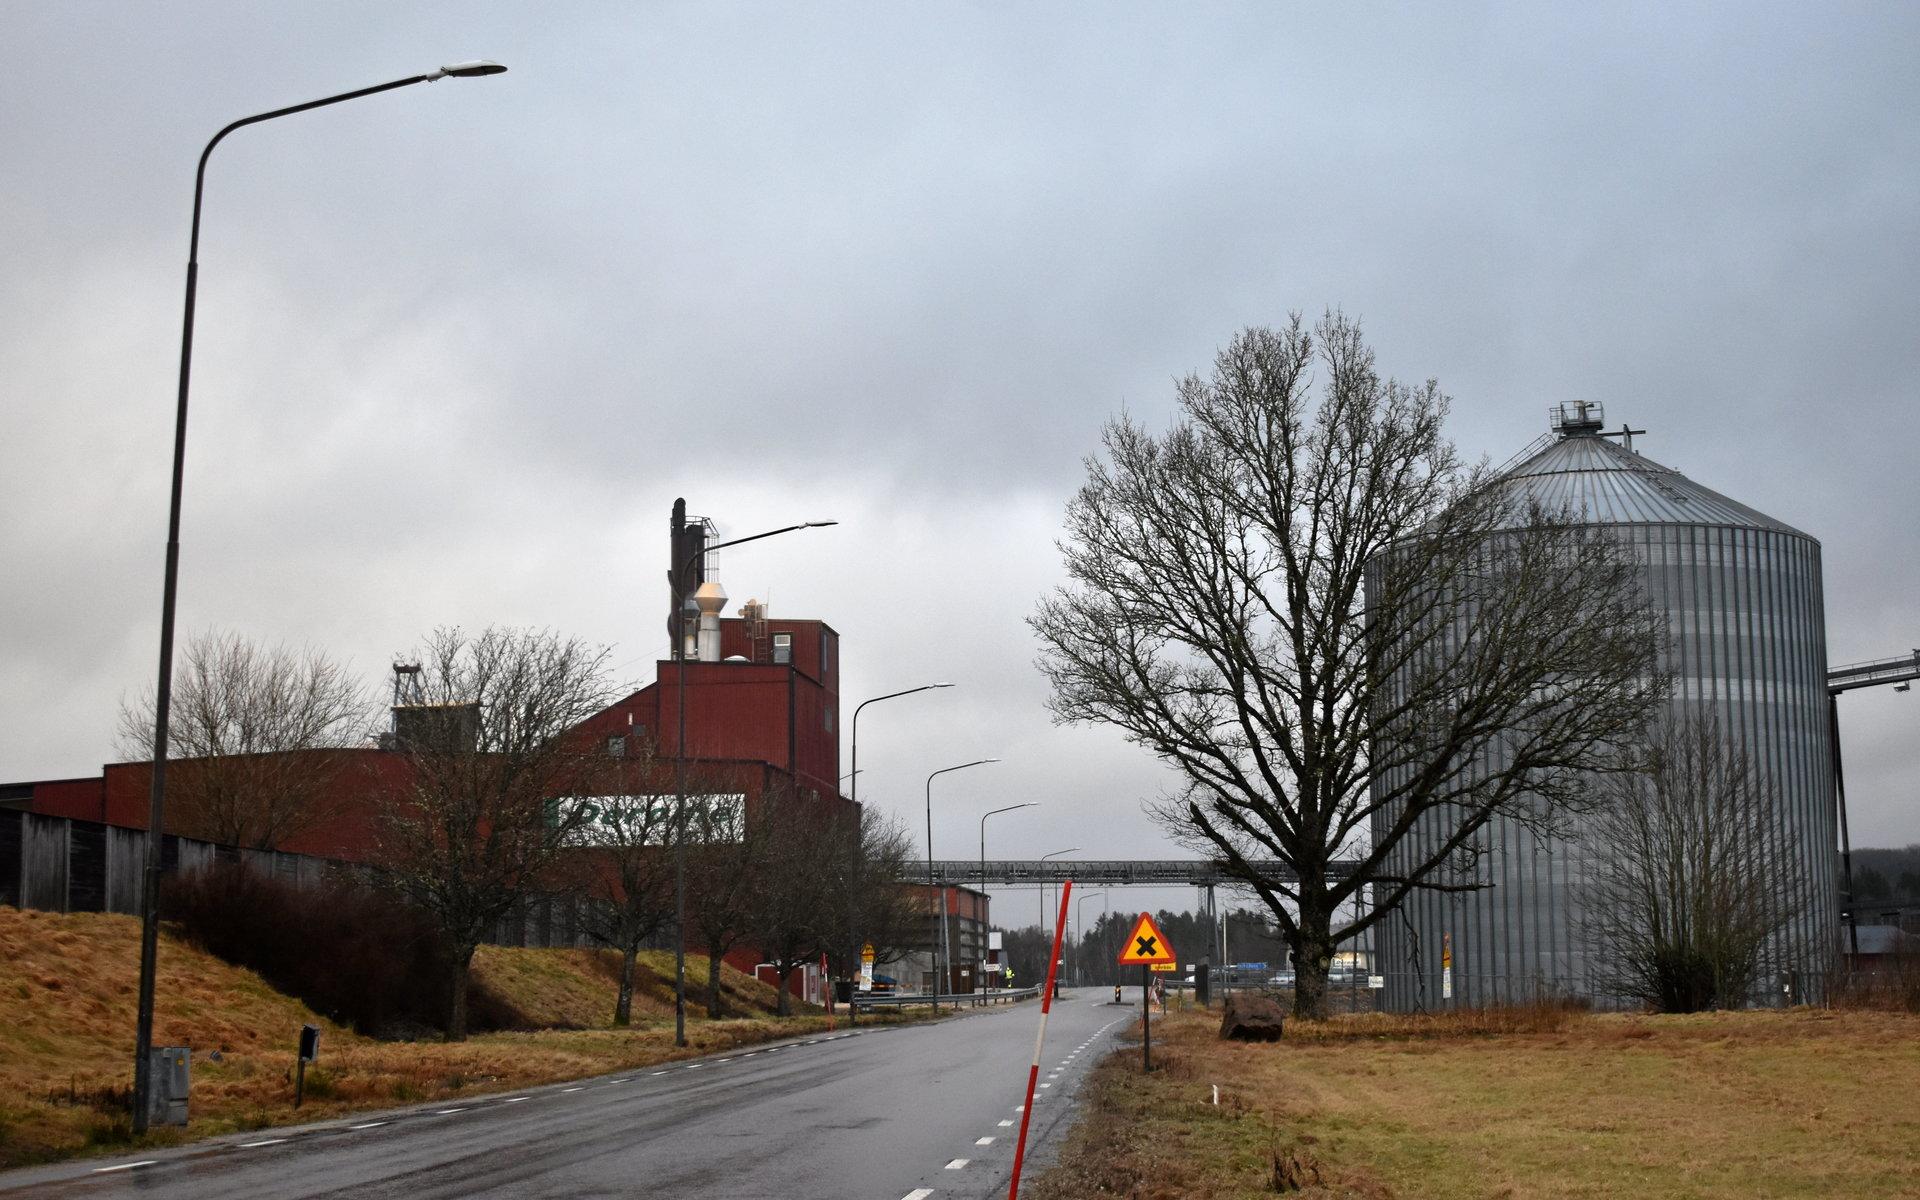 Natten till torsdagen började det brinna i en pelletsfabrik på Kinnaredssågen, som ägs av Deromekoncernen. Branden skedde inne på företagets anläggning och Hallandspostens fotograf blev inte insläppt på torsdagsförmiddagen.